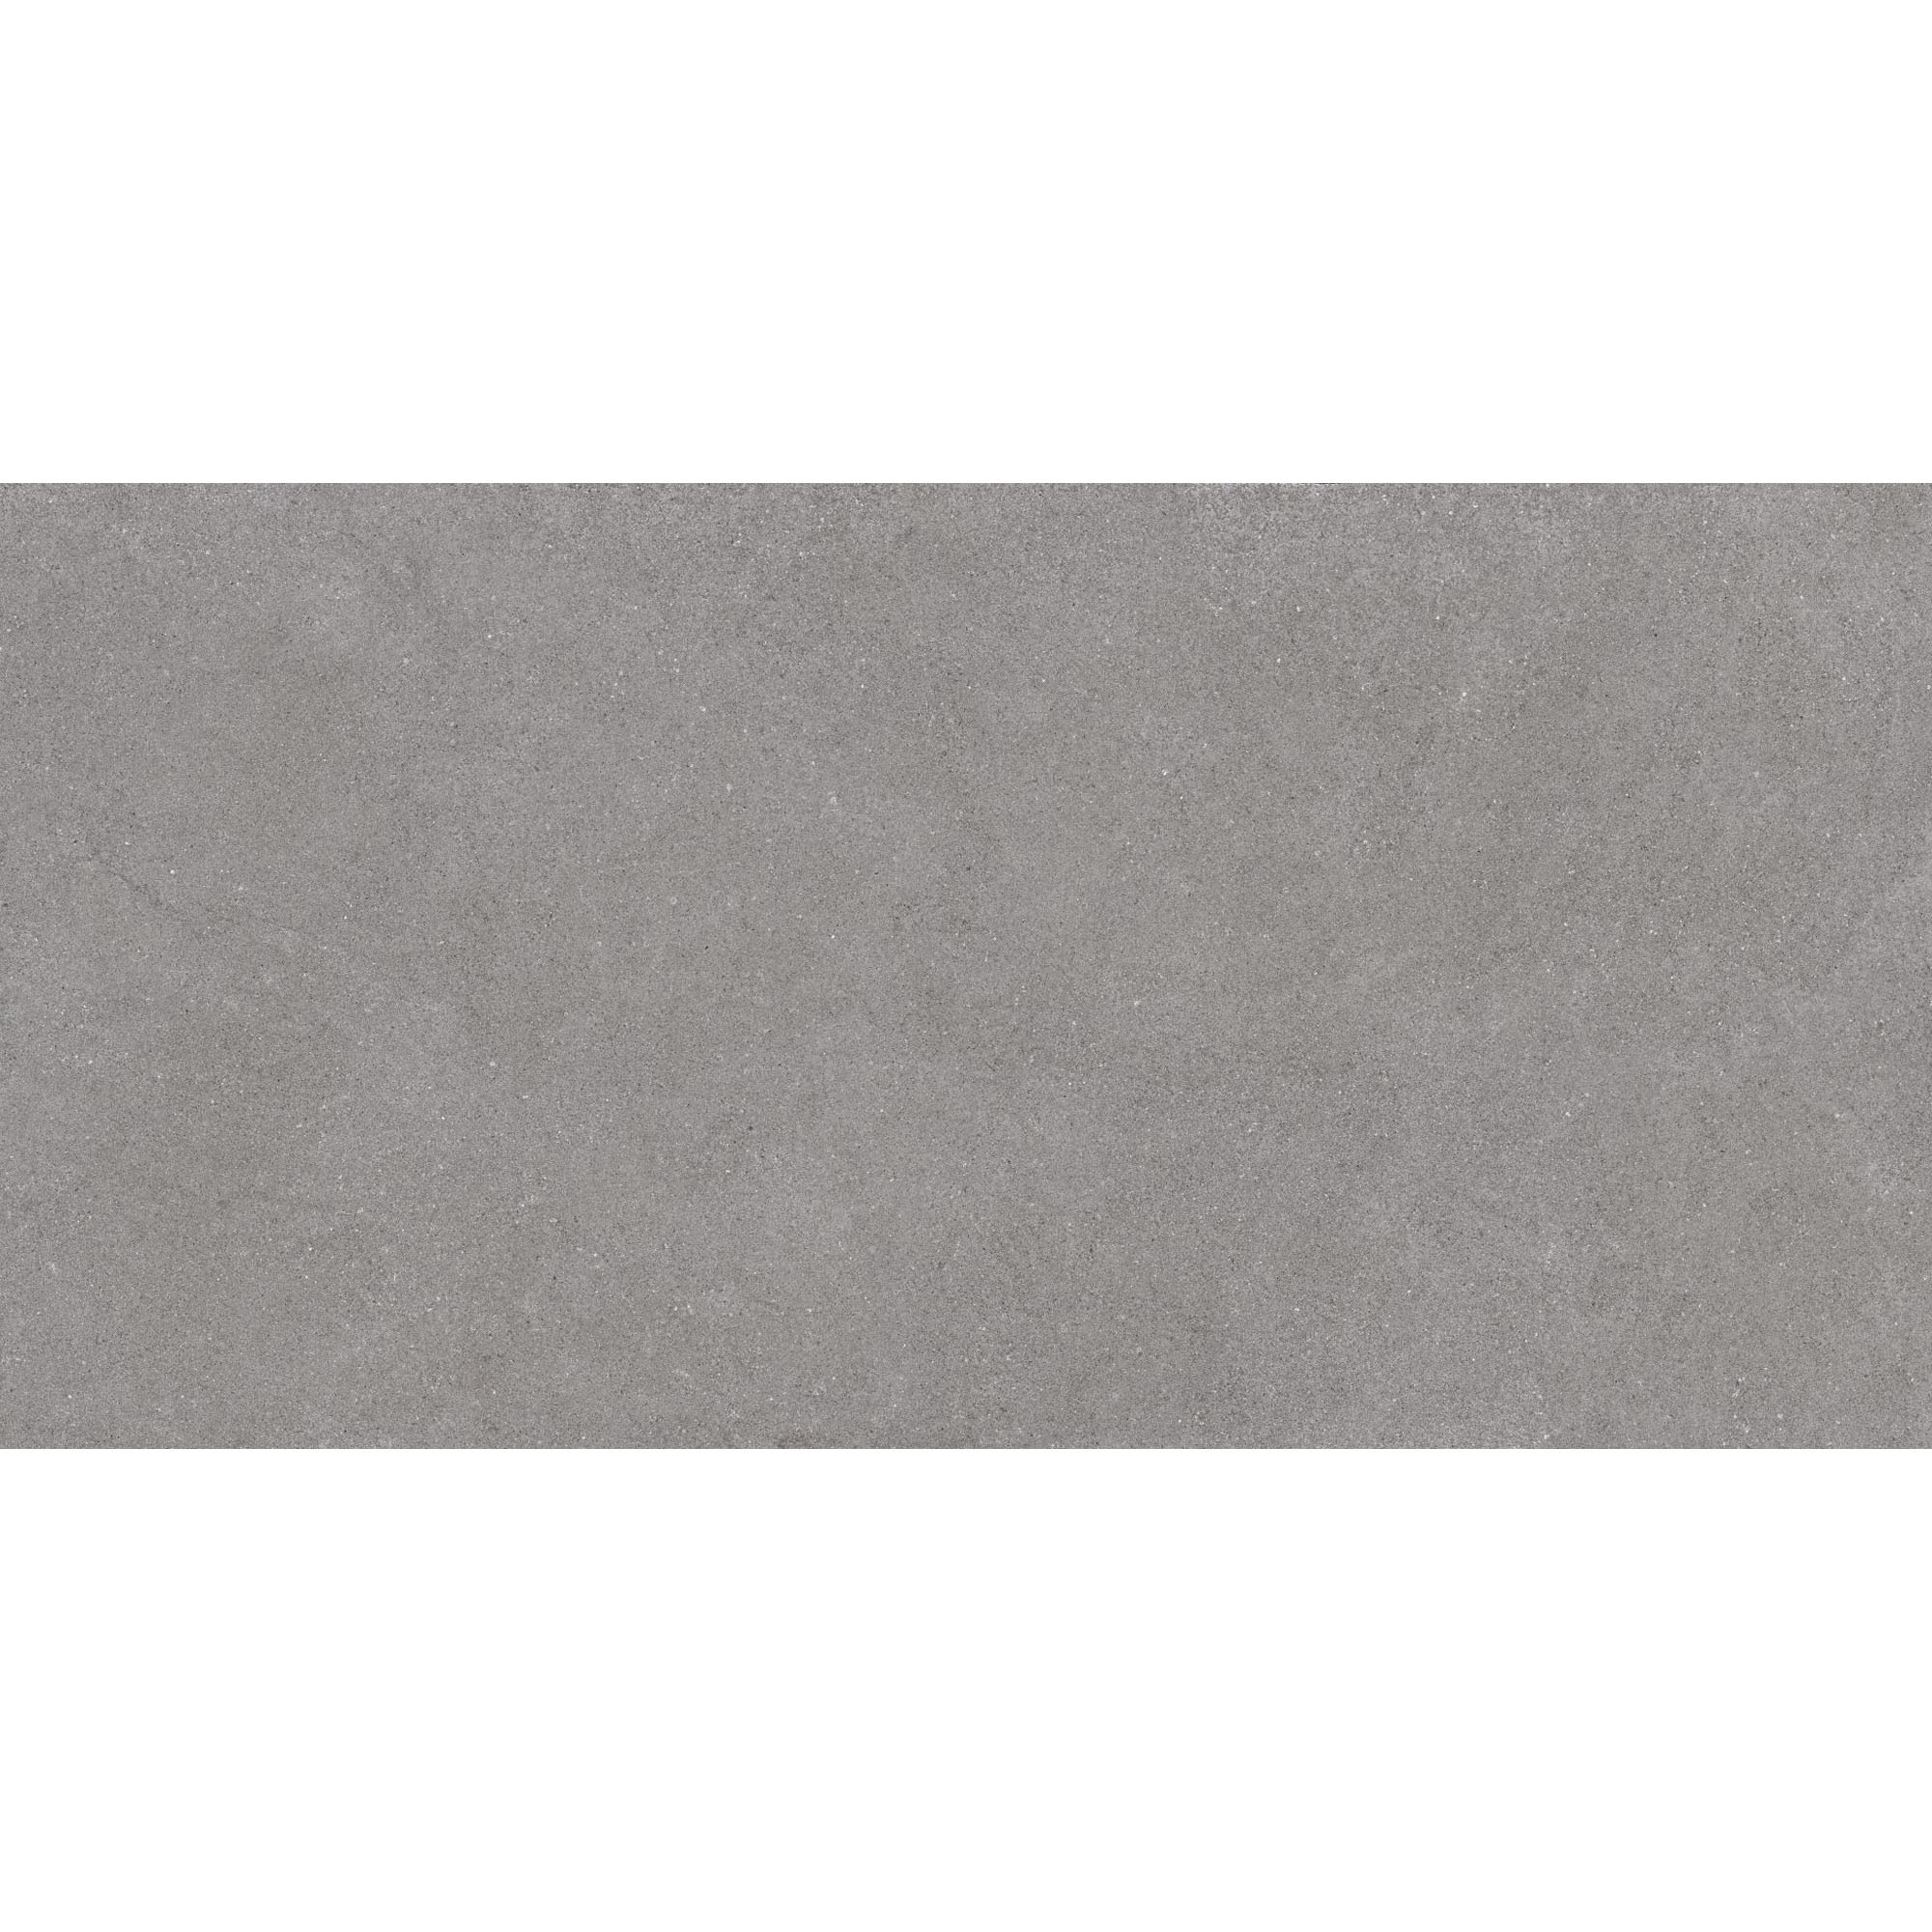 Плитка Estima Luna LN02 39209 80x160 см неполированный серый плитка estima vision vs02 полированный серый 60x120 см